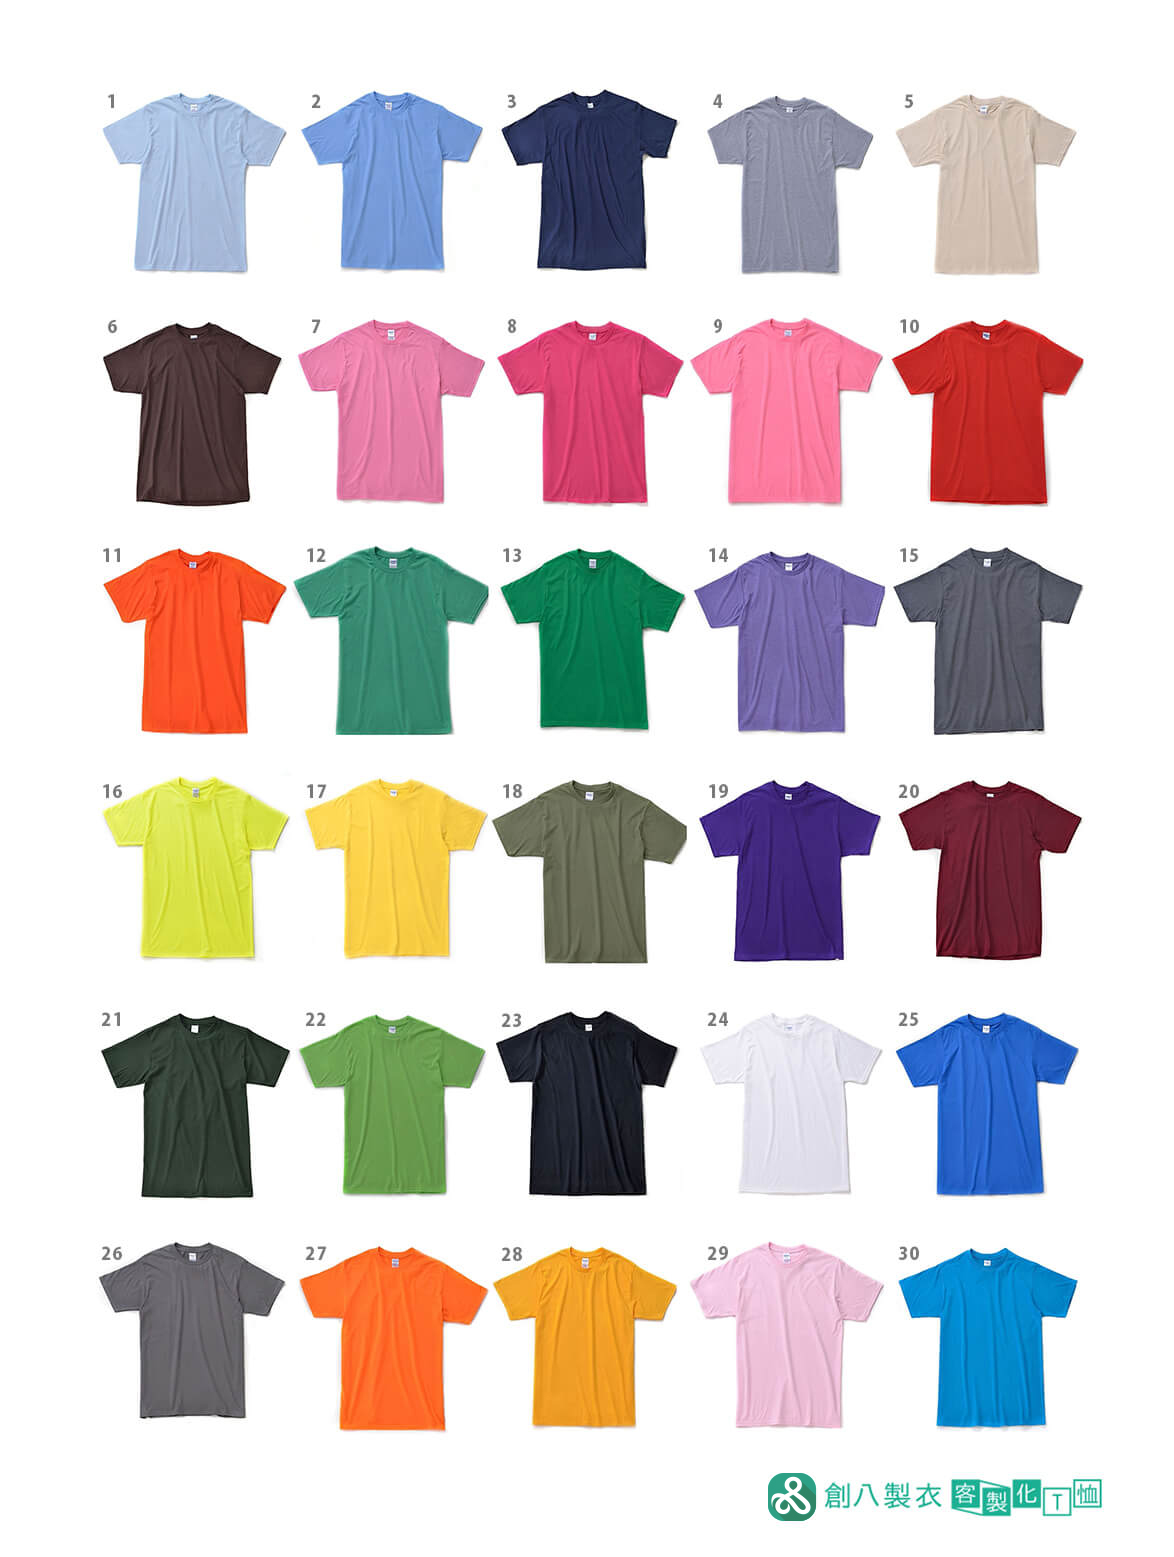 多種顏色的衣服可以挑選